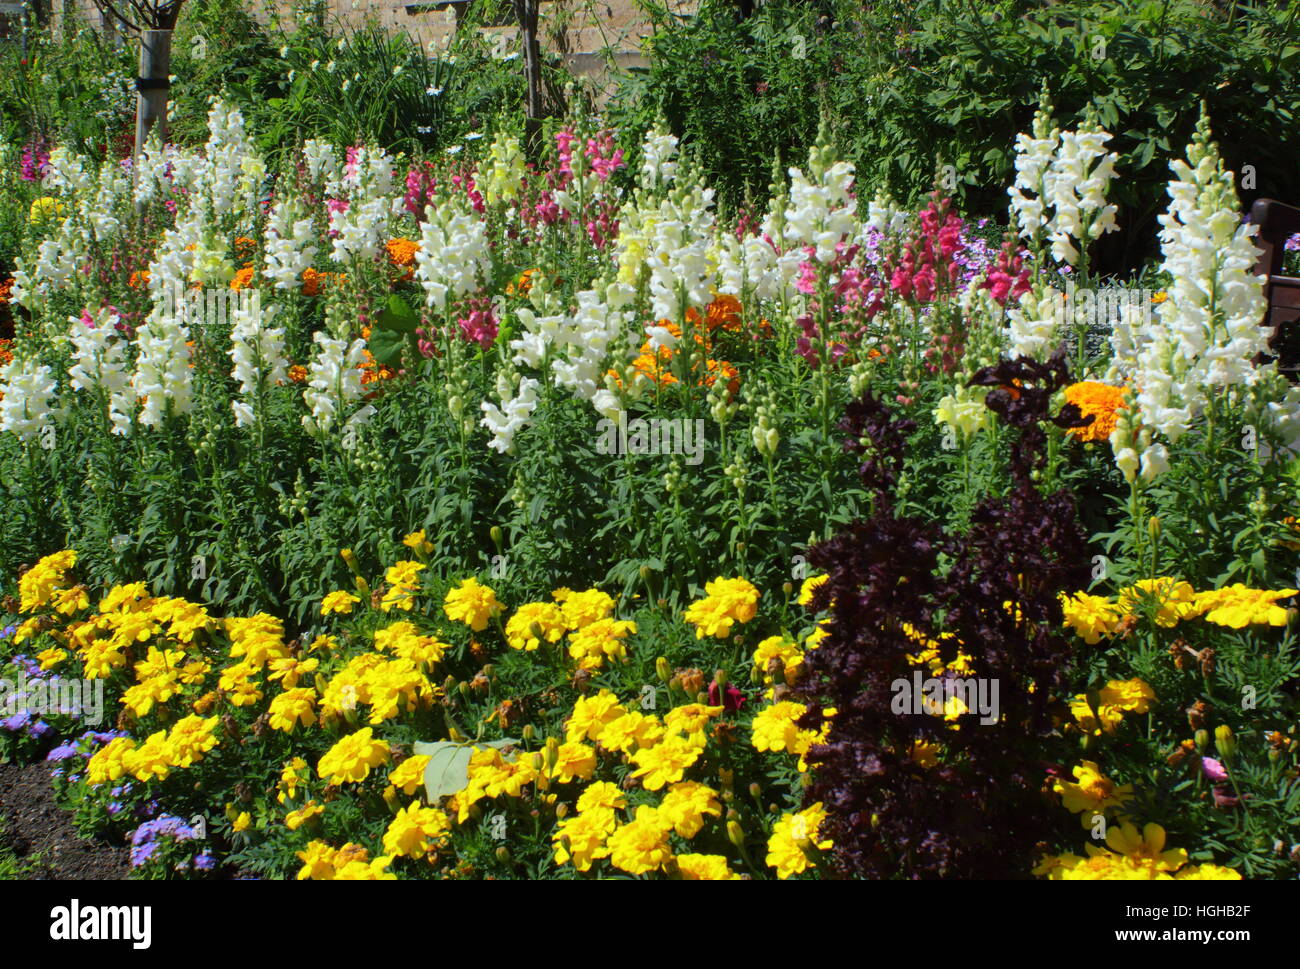 Sommer Blumen Grenze zeigt geschichteten Höhen mit Ringelblumen, Löwenmäulchen (Antirrhinums) und Rosen in einem englischen Garten Stockfoto